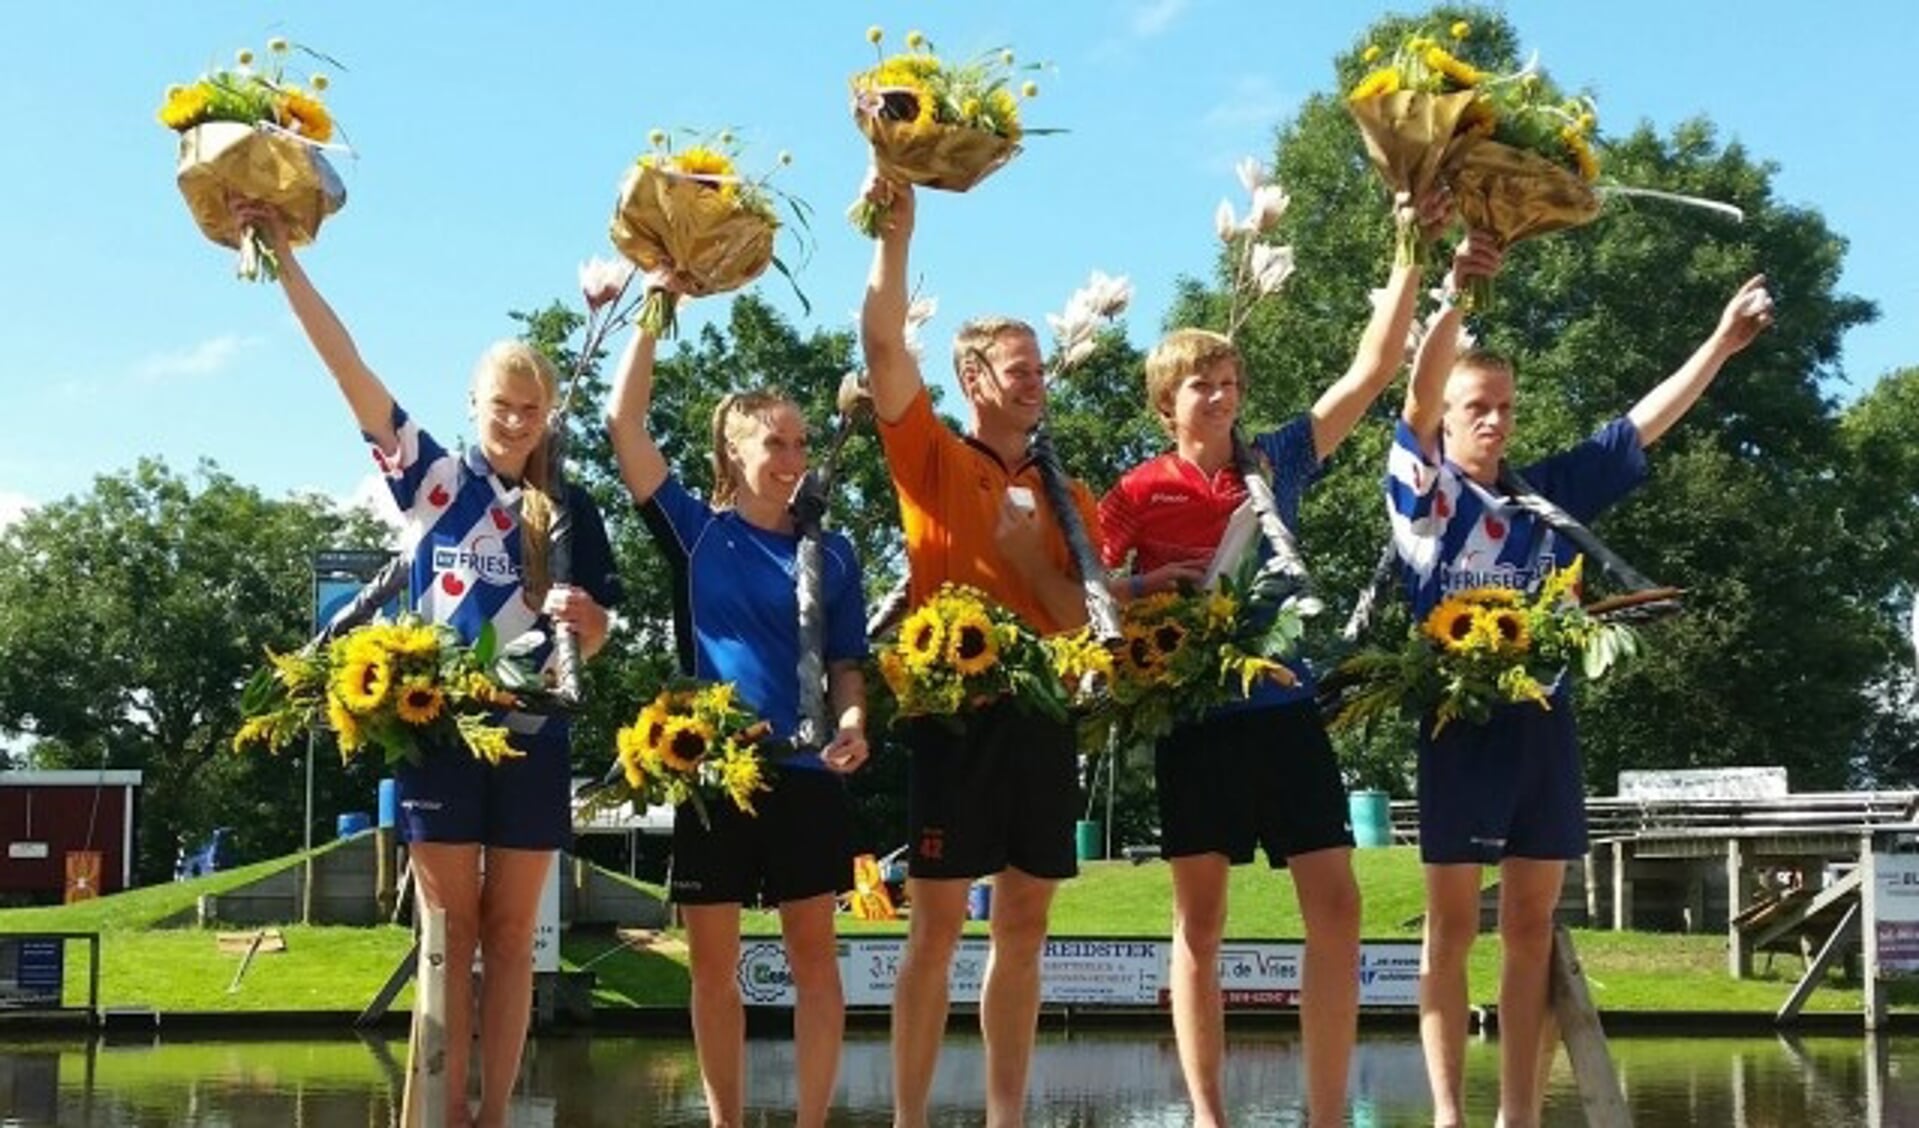 De drie Hollandse winnaars Jaco de Groot (senioren), Wendy Helmes (dames) en Reinier Overbeek (jongens) op het podium met de Friese toppers Sigrid Bokma (meisjes) en Freark Kramer (junioren). (Foto: Arja Helmes) 